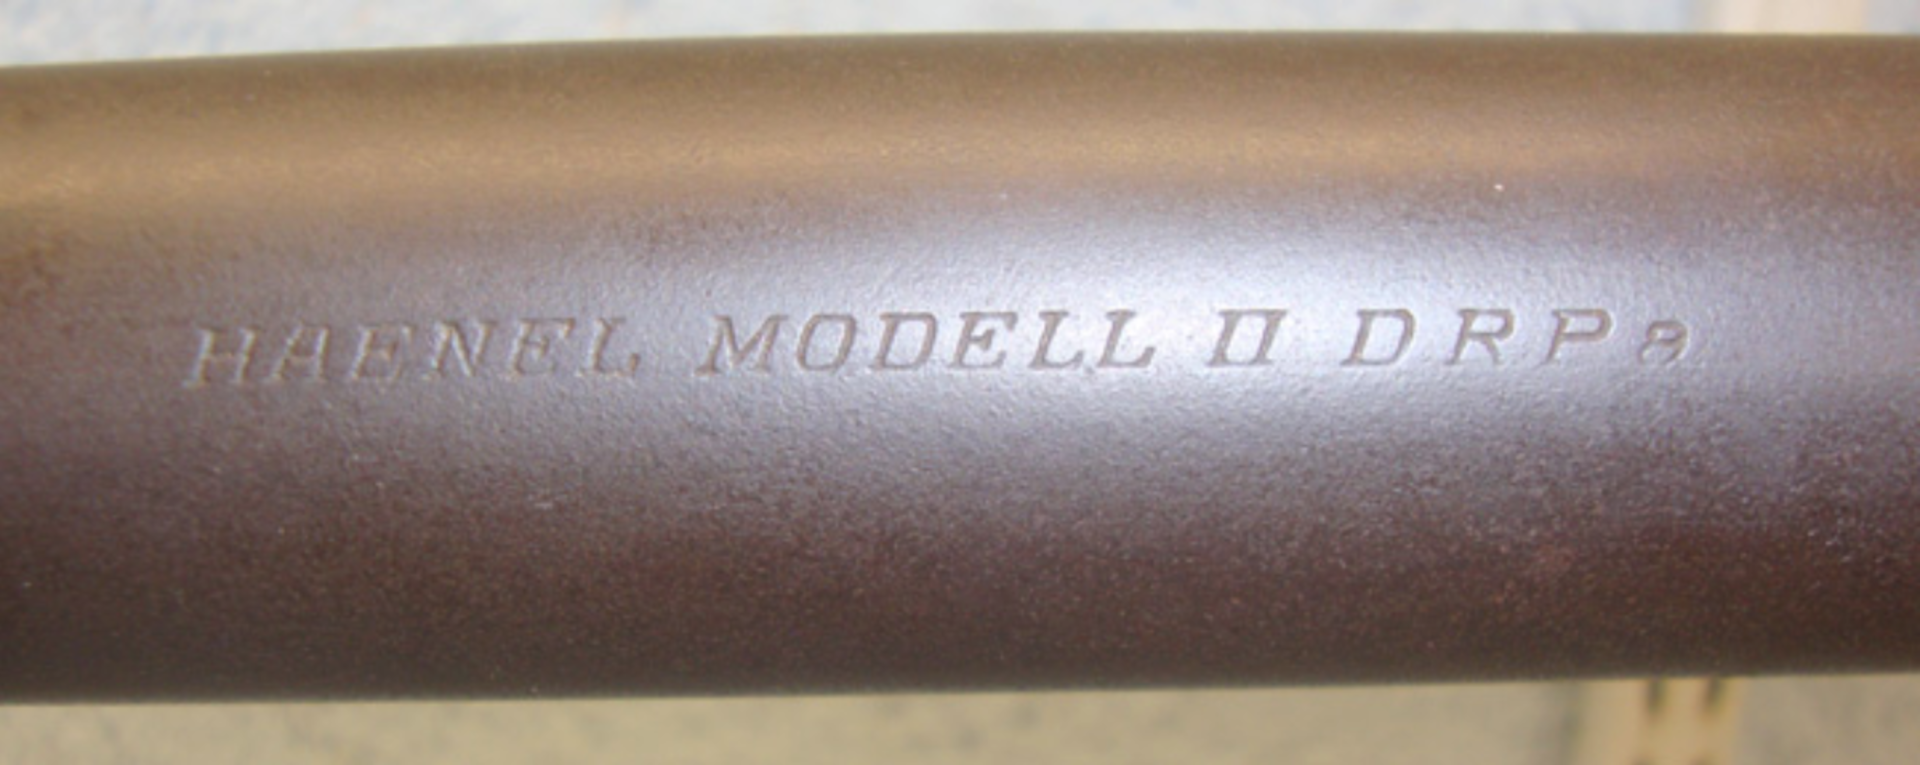 1925-1938, German Haenel Model II D.R.P. .177 Calibre Break Action Air Rifle. - Image 2 of 3